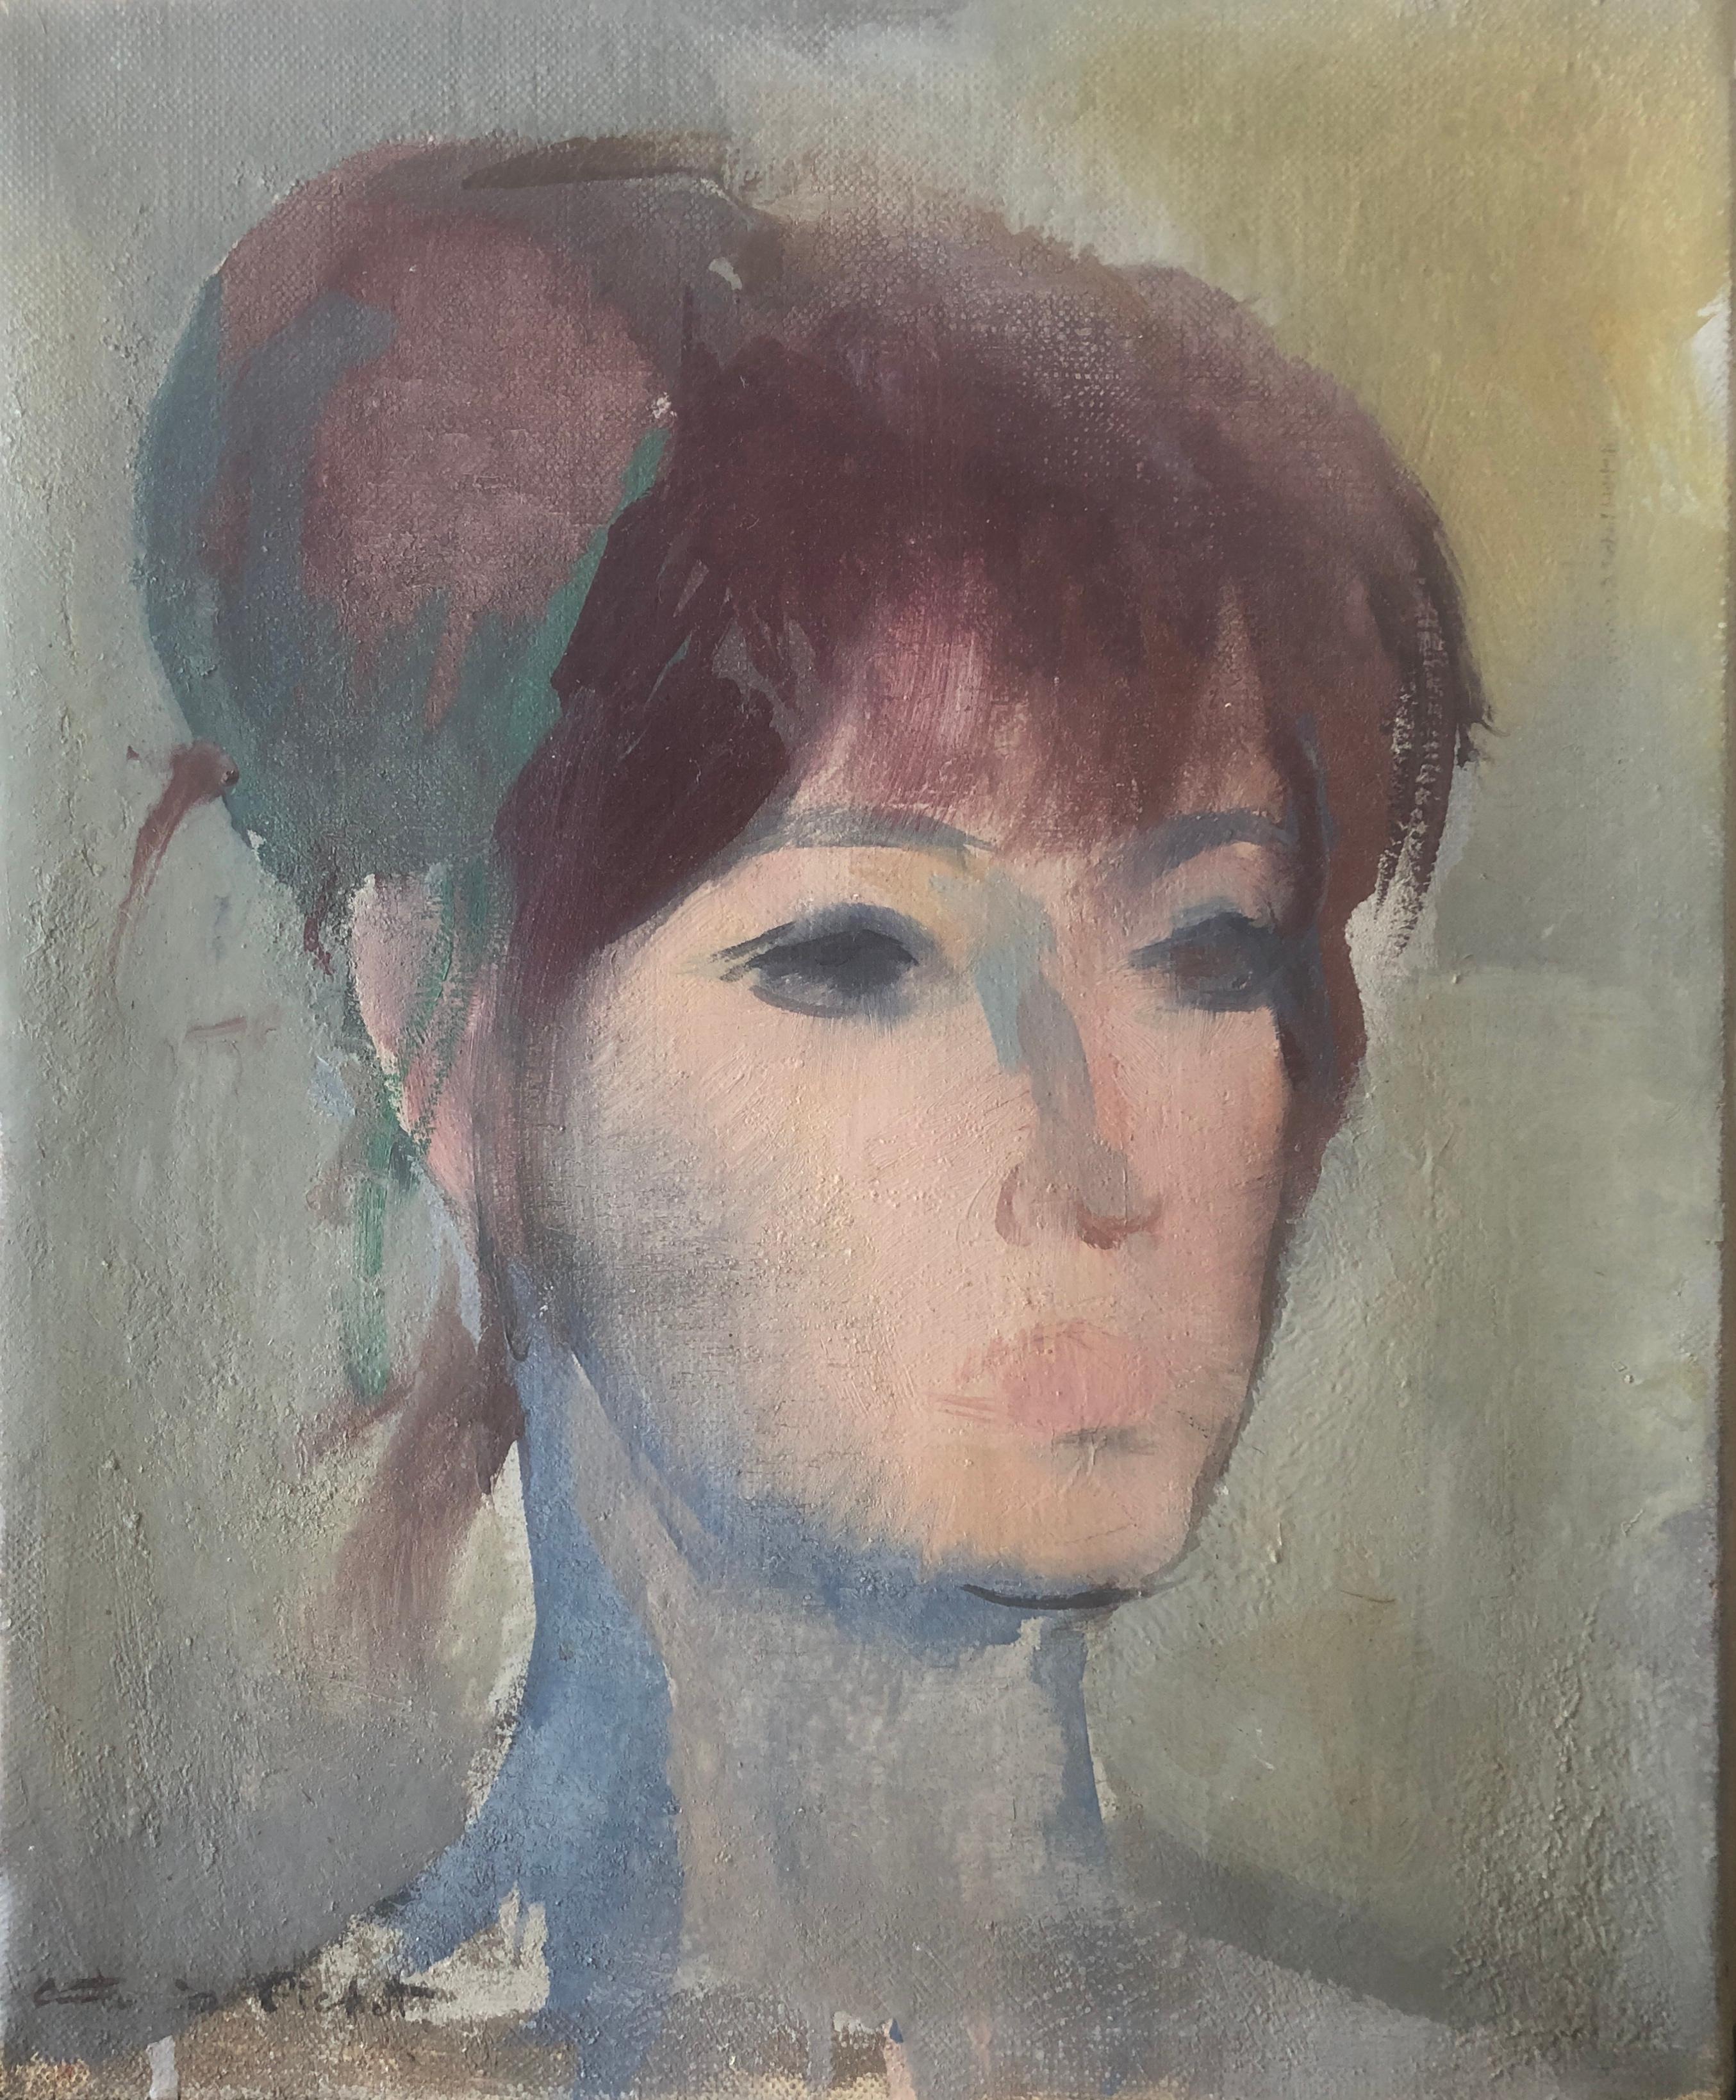 Portrait Painting Ramon Pichot i Soler - Visage de femme huile sur toile